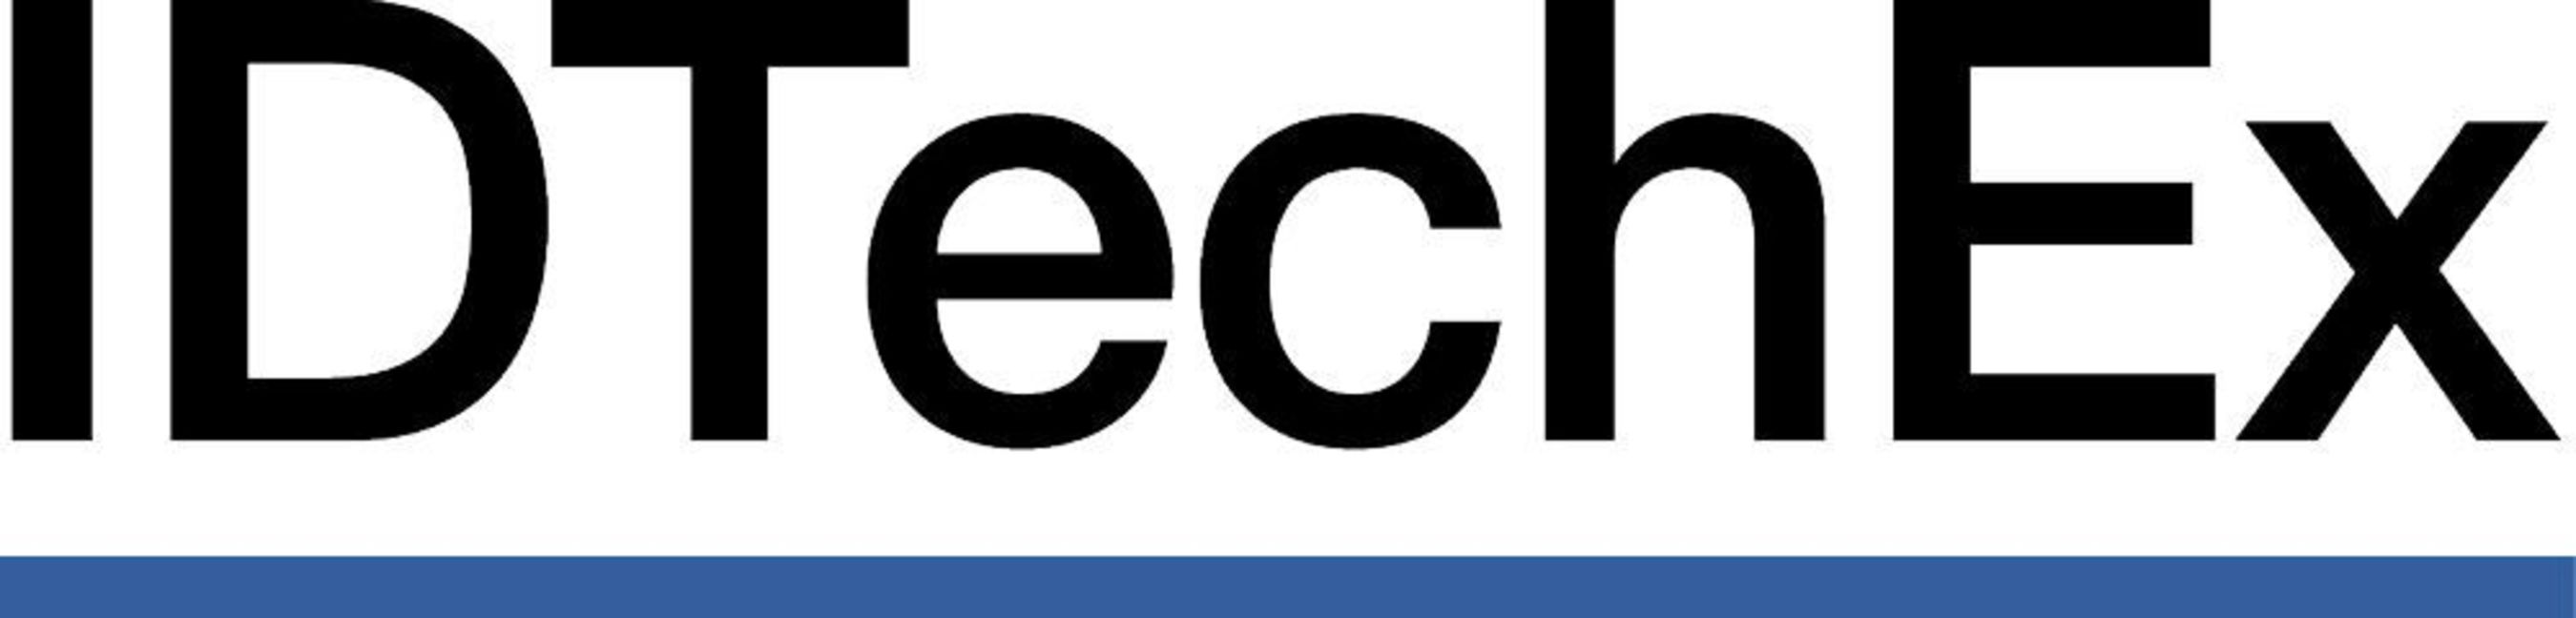 IDTechEx Logo